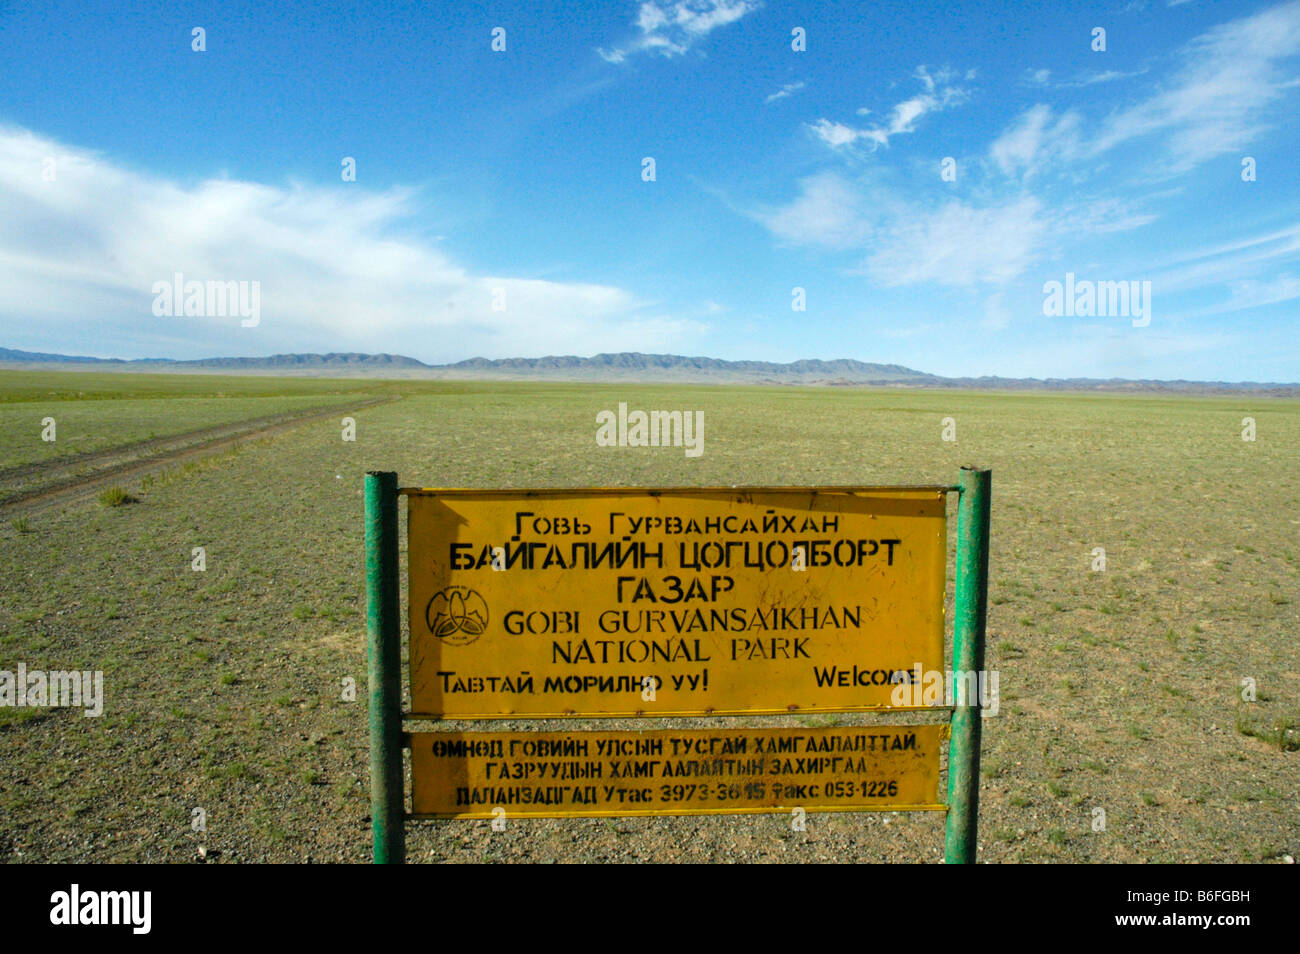 Sign for Gobi Gurvansaikhan National Park in the vast steppe, Mongolia, Asia Stock Photo